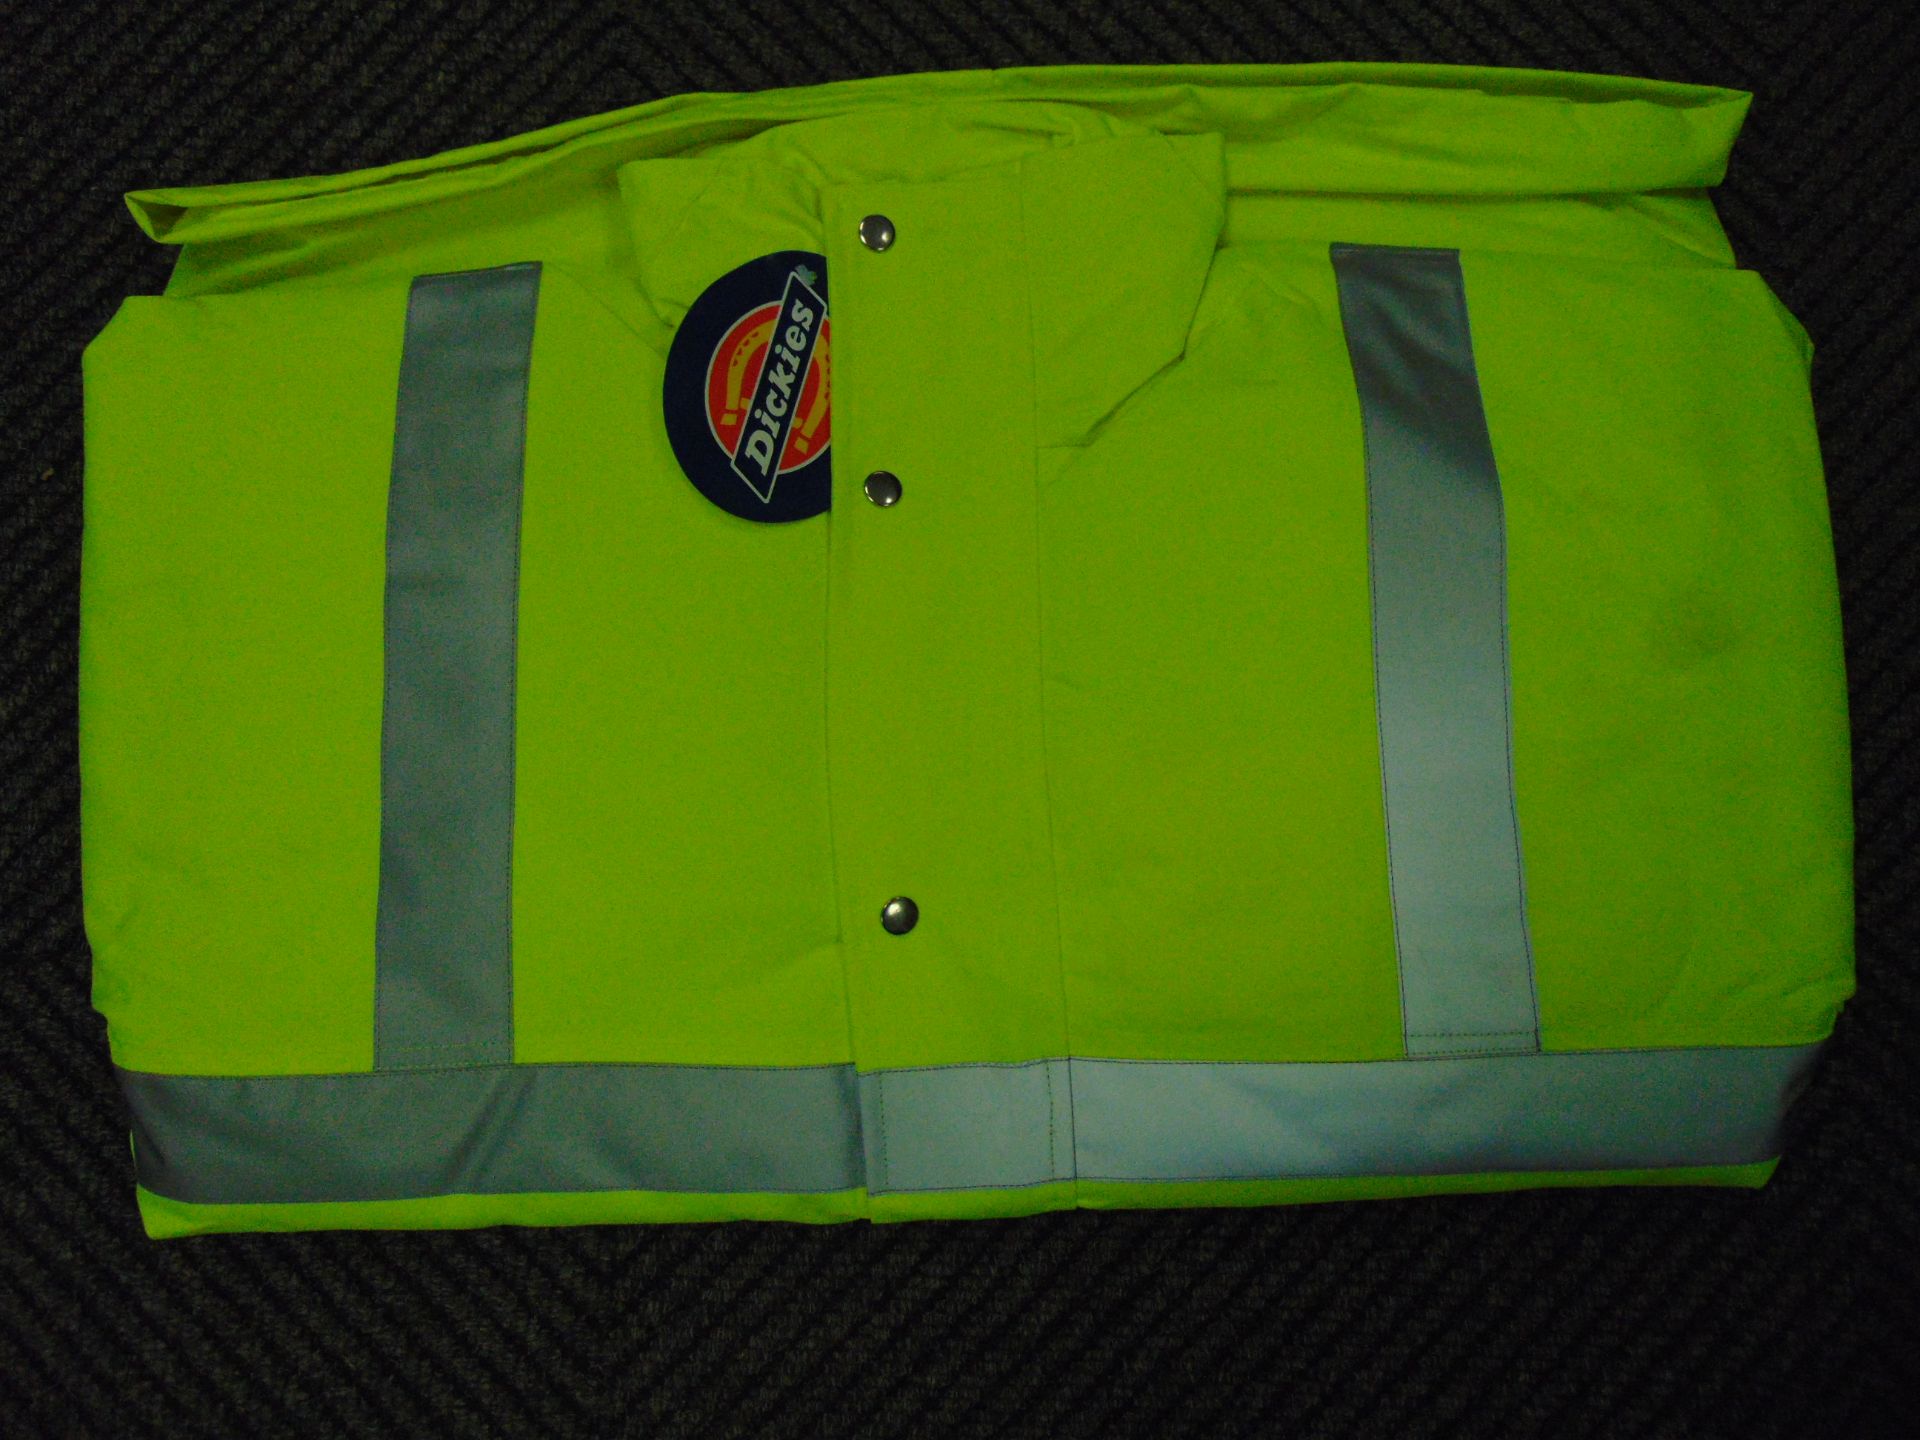 UNISSUED Hi Visibility Florescent Jacket. Size XLarge. - Image 3 of 5